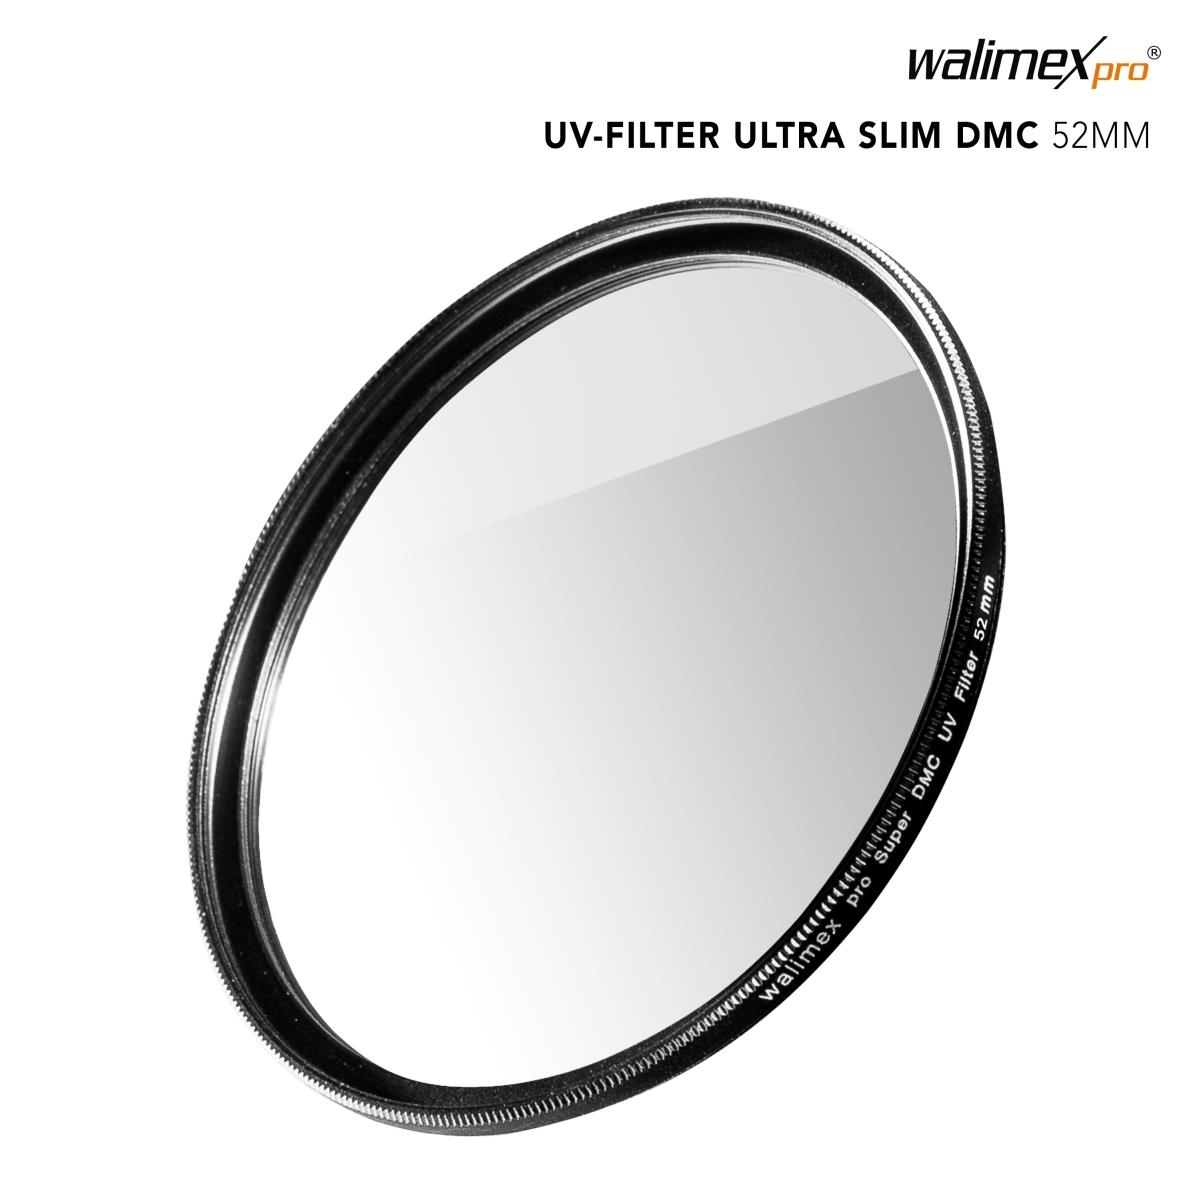 Walimex pro UV-Filter Slim Super DMC 52mm